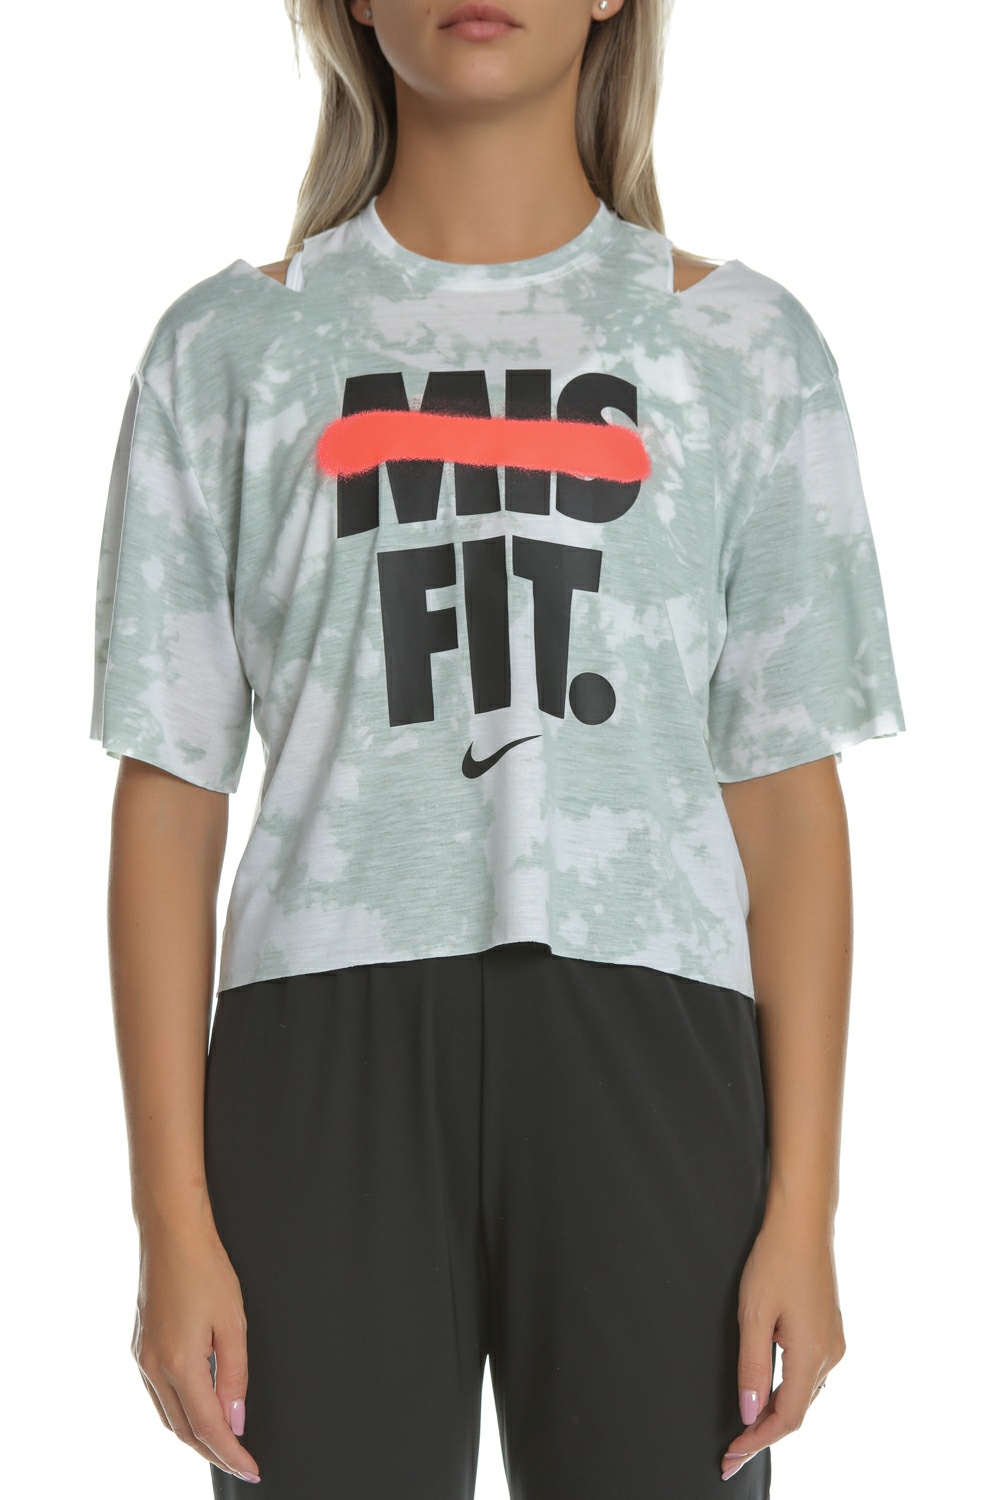 NIKE - Γυναικείο κοντομάνικο μπλουζάκι Nike Graphic Training Top γκρι Γυναικεία/Ρούχα/Αθλητικά/T-shirt-Τοπ